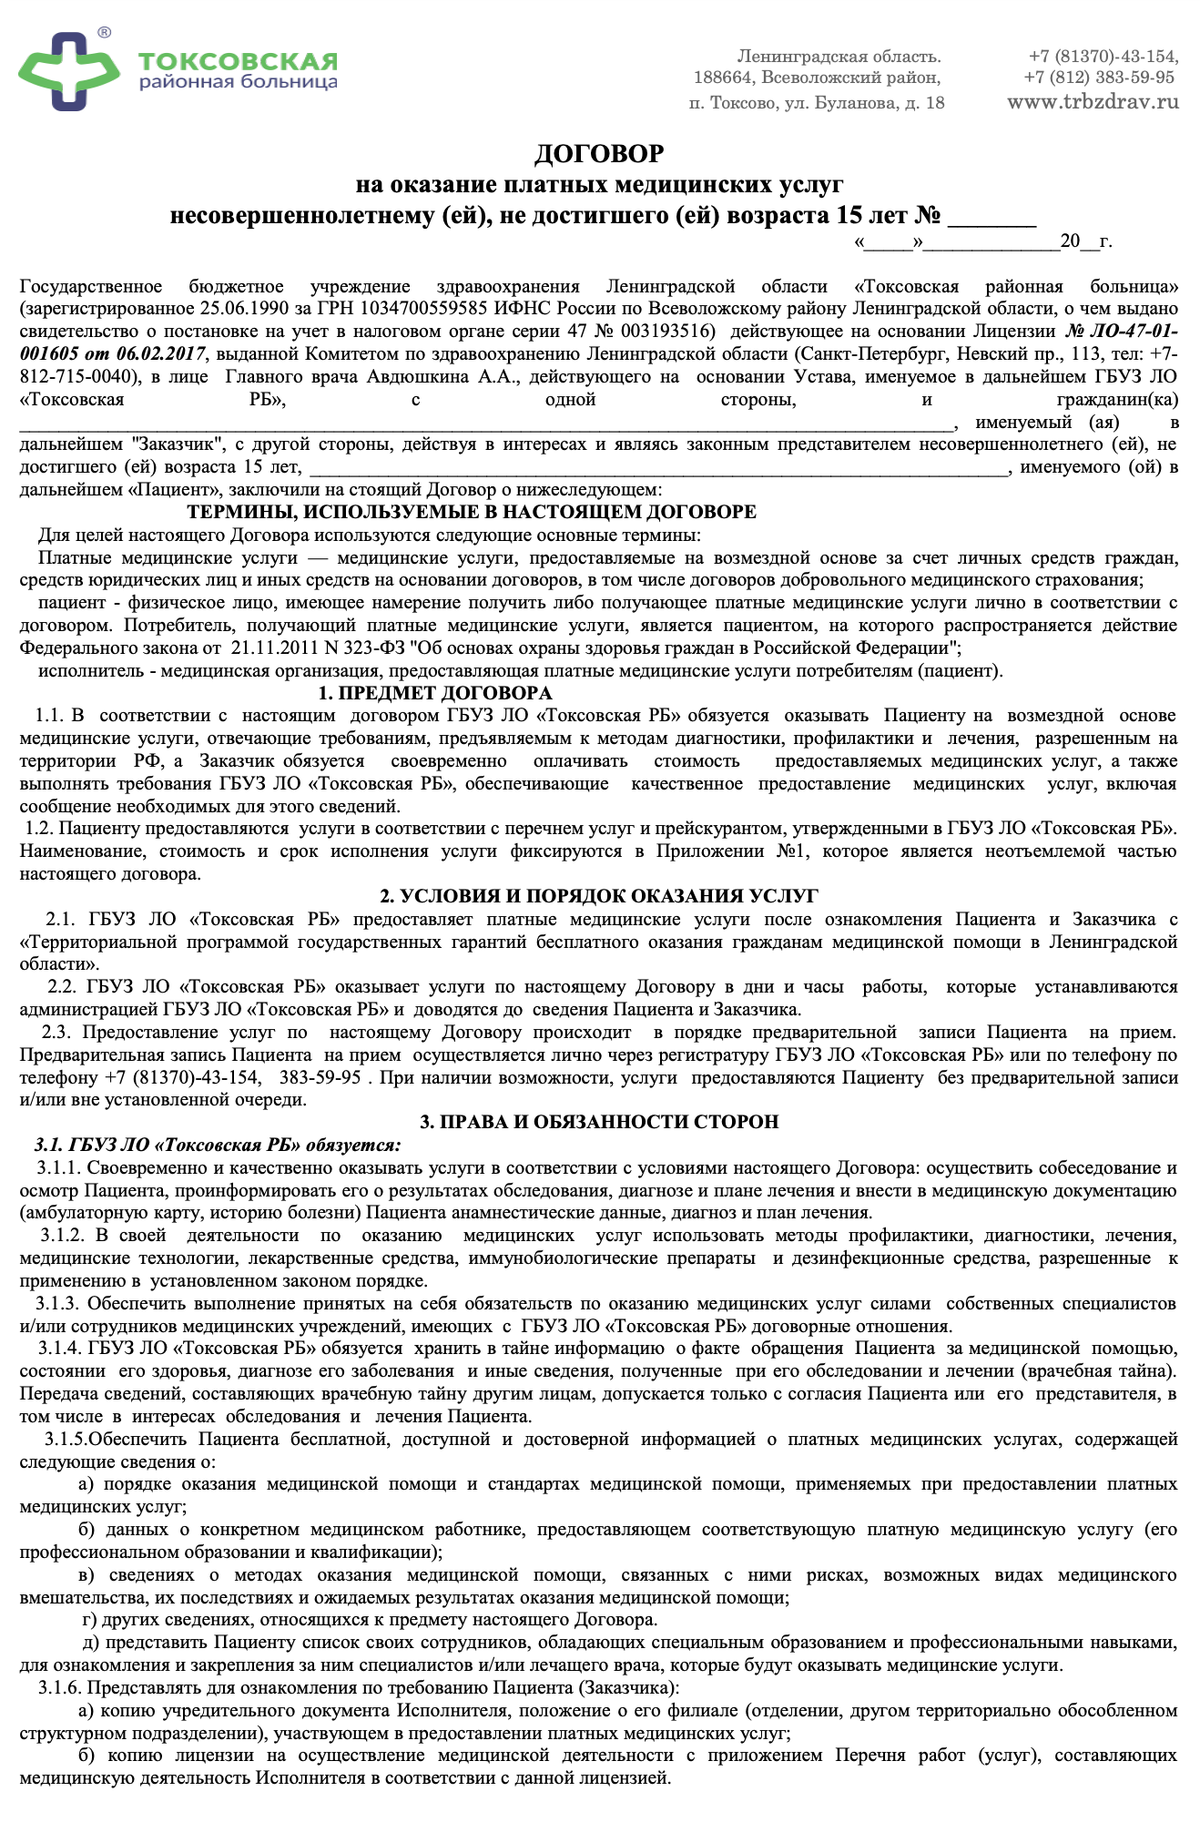 Пример договора на оказание платных медицинских услуг несовершеннолетнему. Источник: trbzdrav.ru